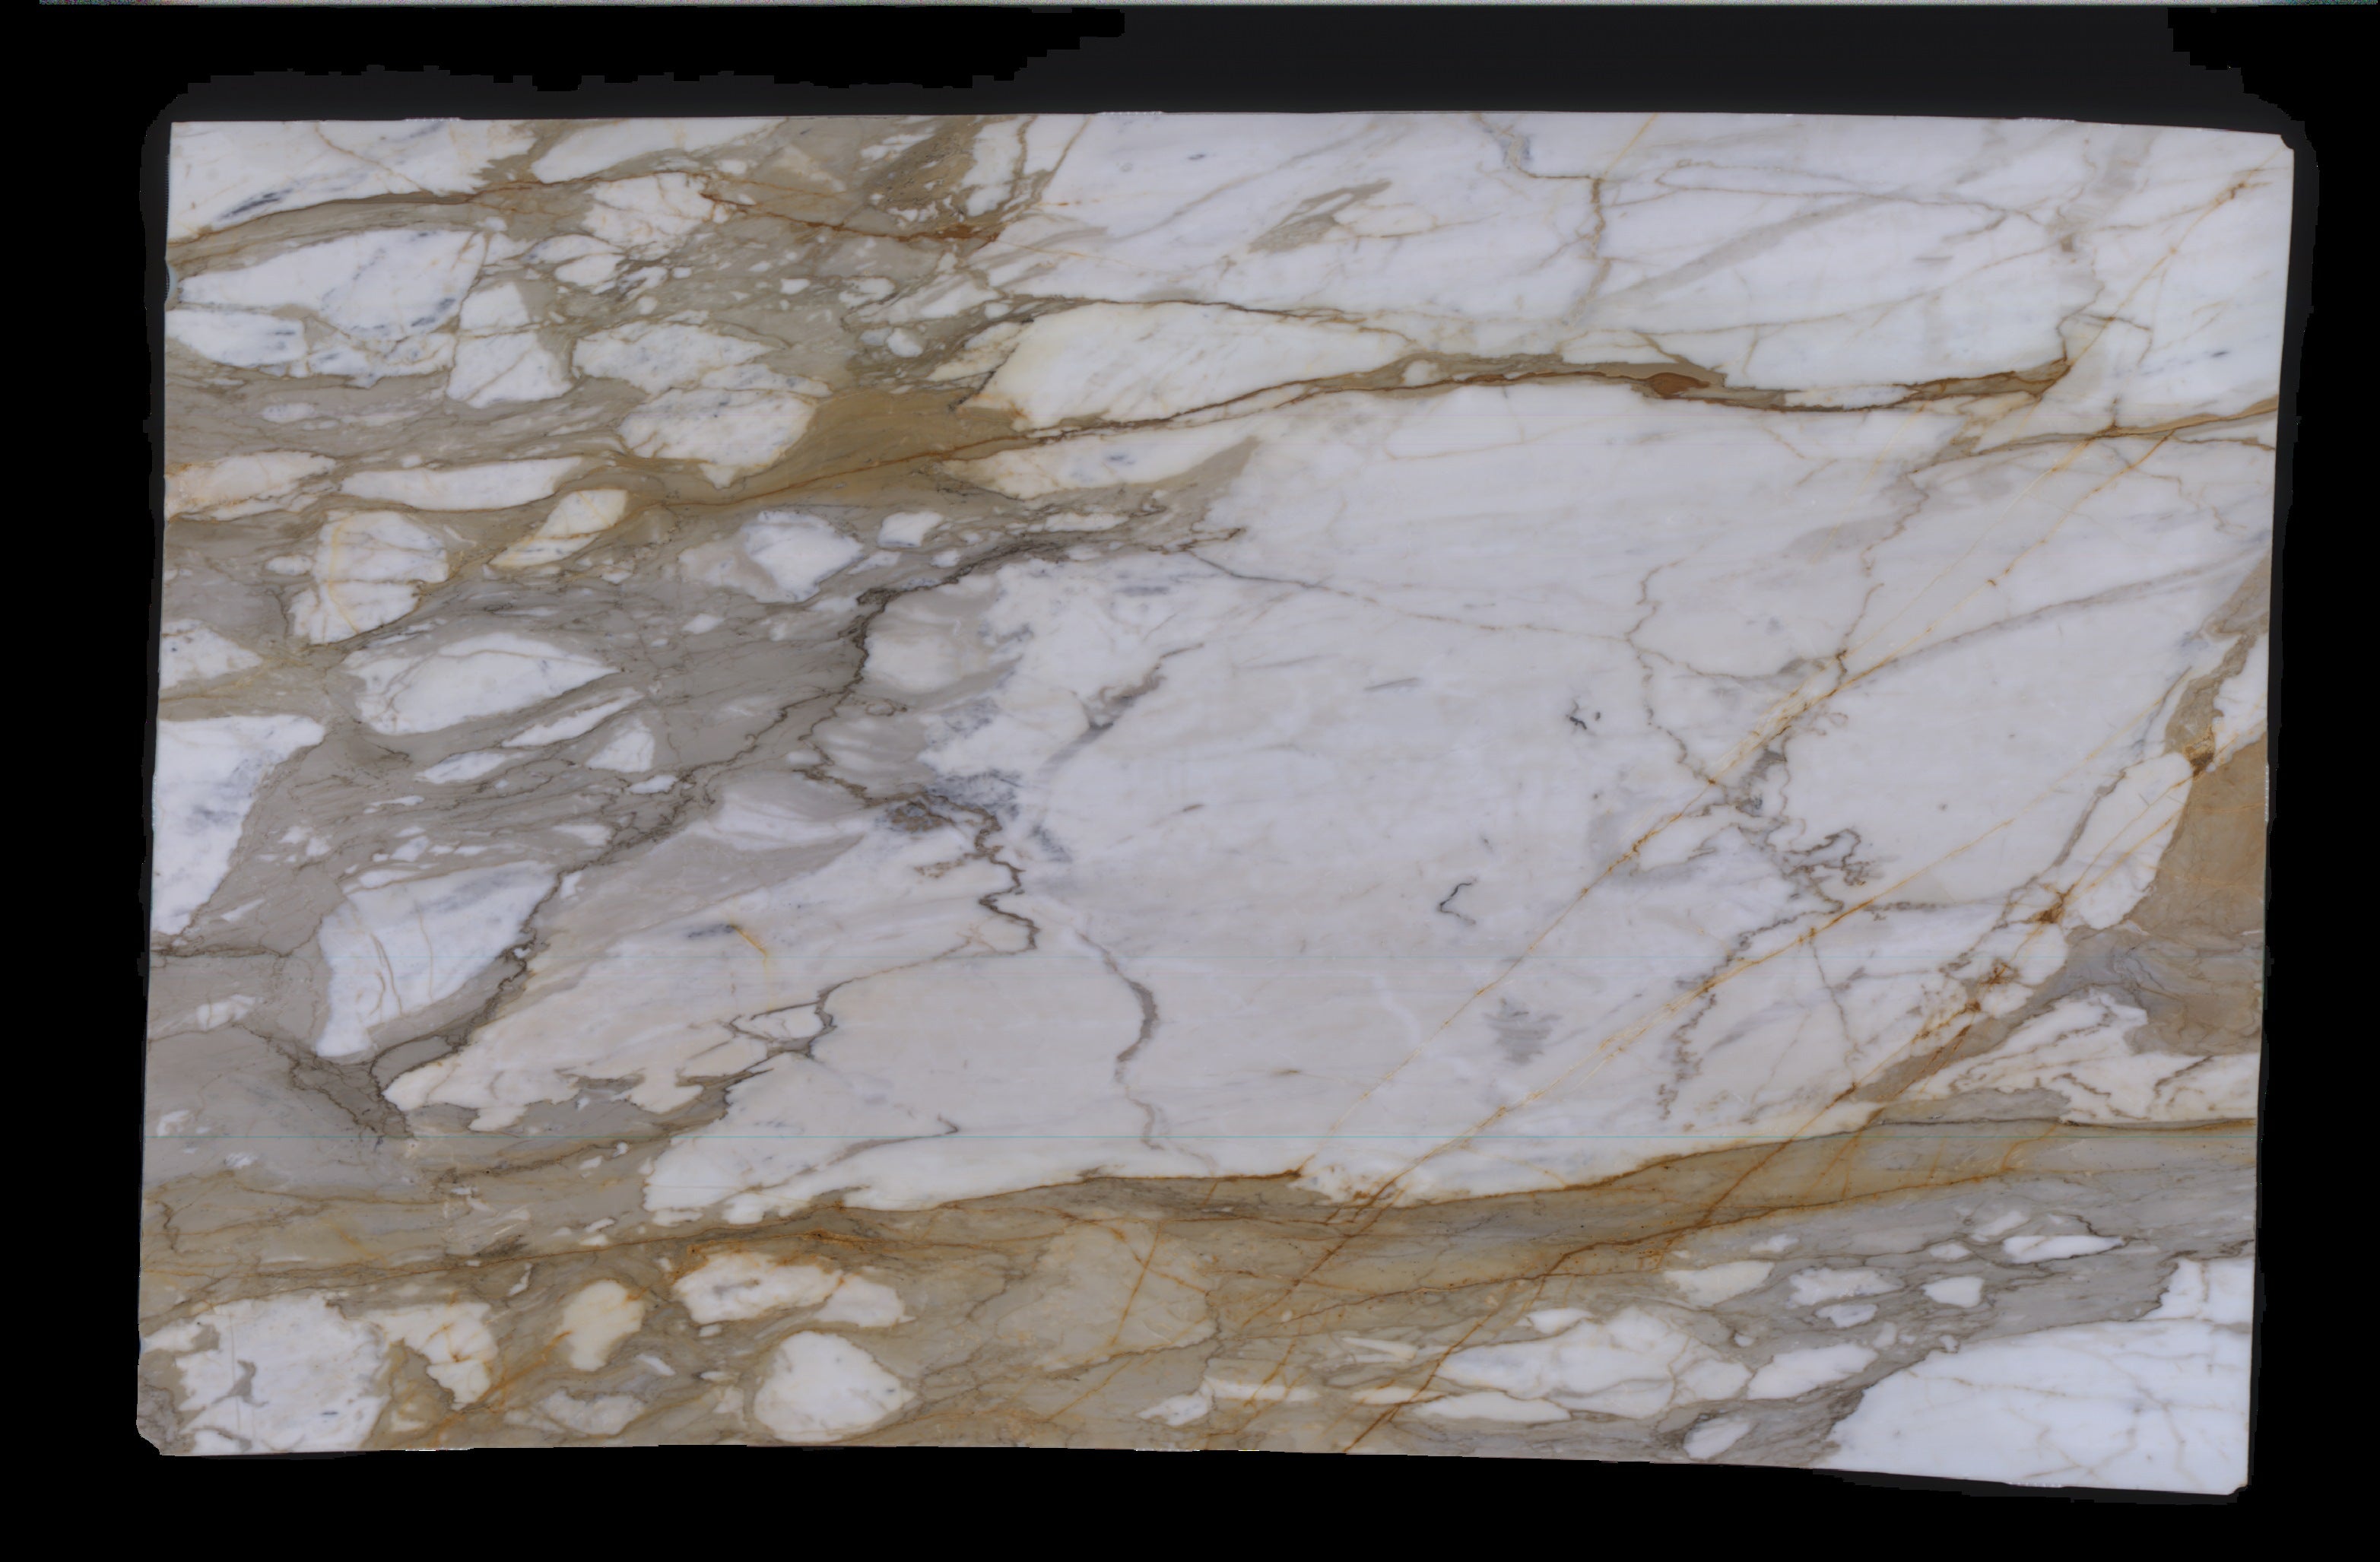  Calacatta Macchia Vecchia Marble Slab 3/4 - 953#31 -  VS 70x113 